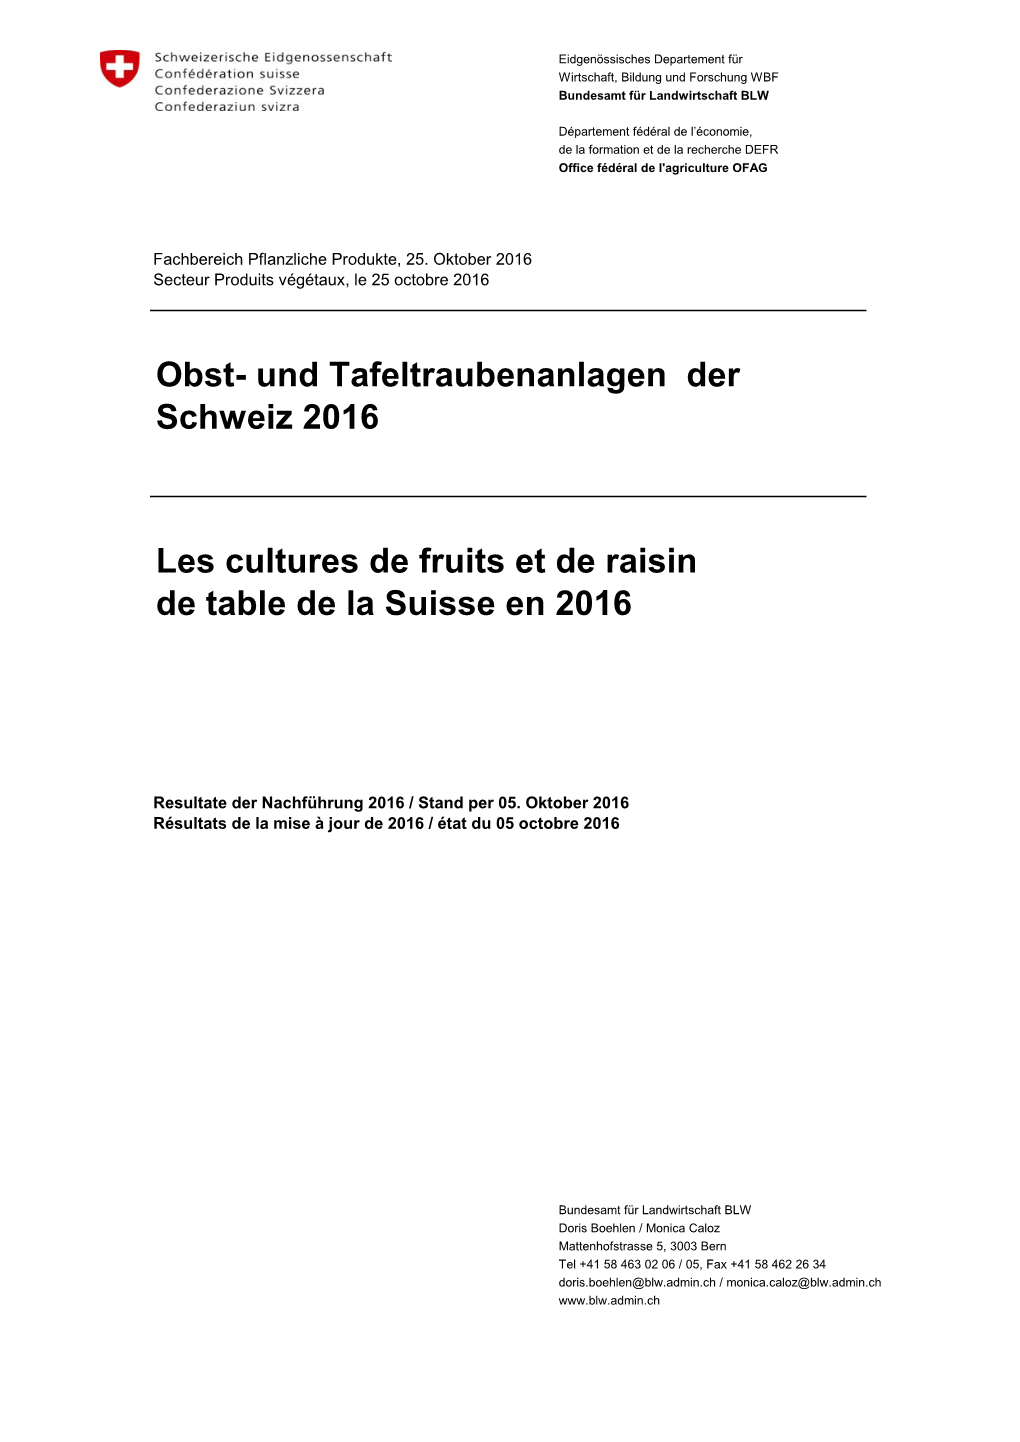 Obst- Und Tafeltraubenanlagen Der Schweiz 2016